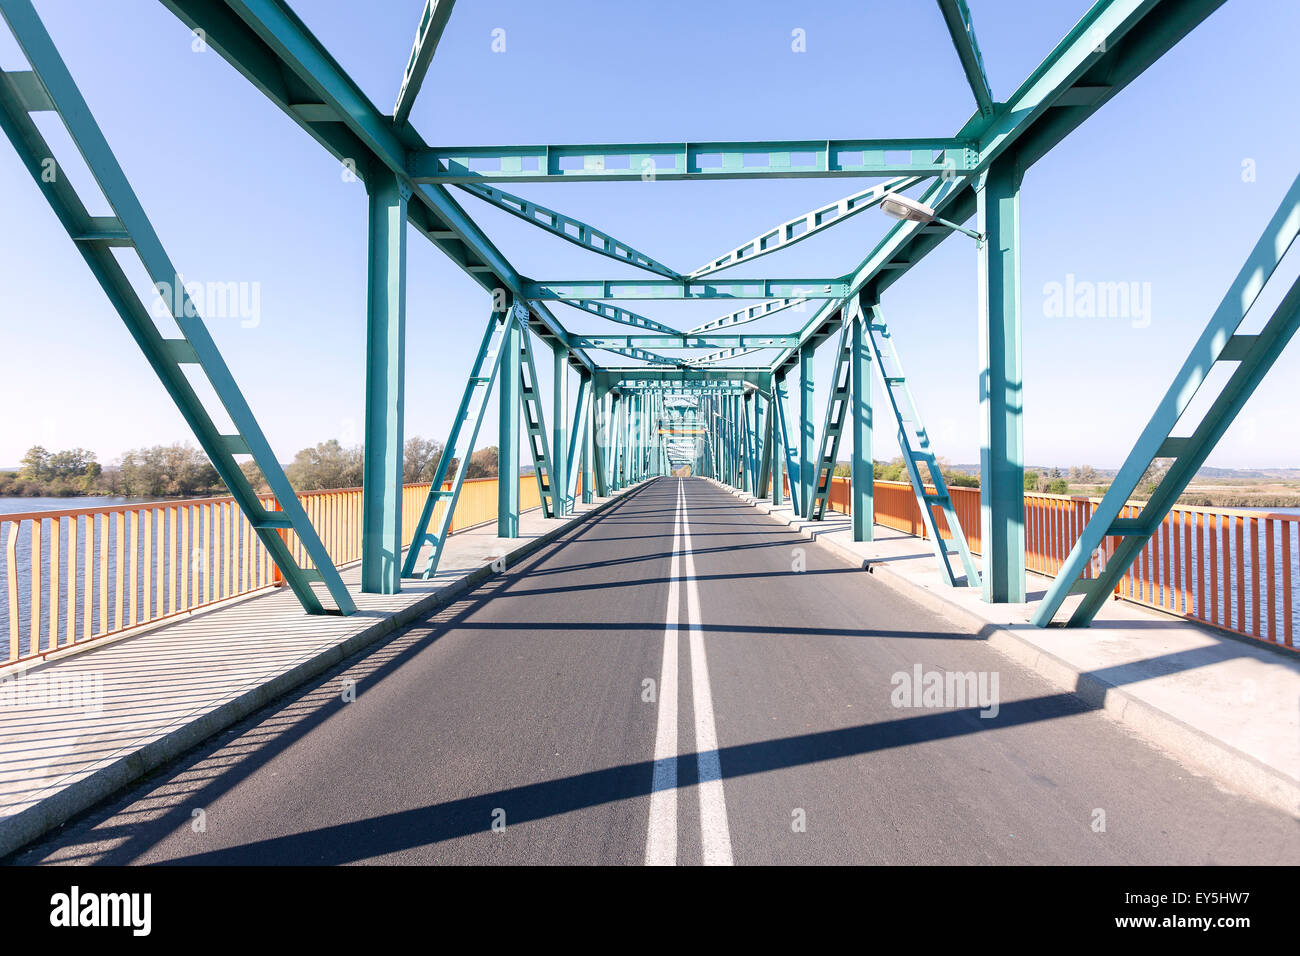 Photo of a long steel bridge over a river, Gryfino in Poland. Stock Photo